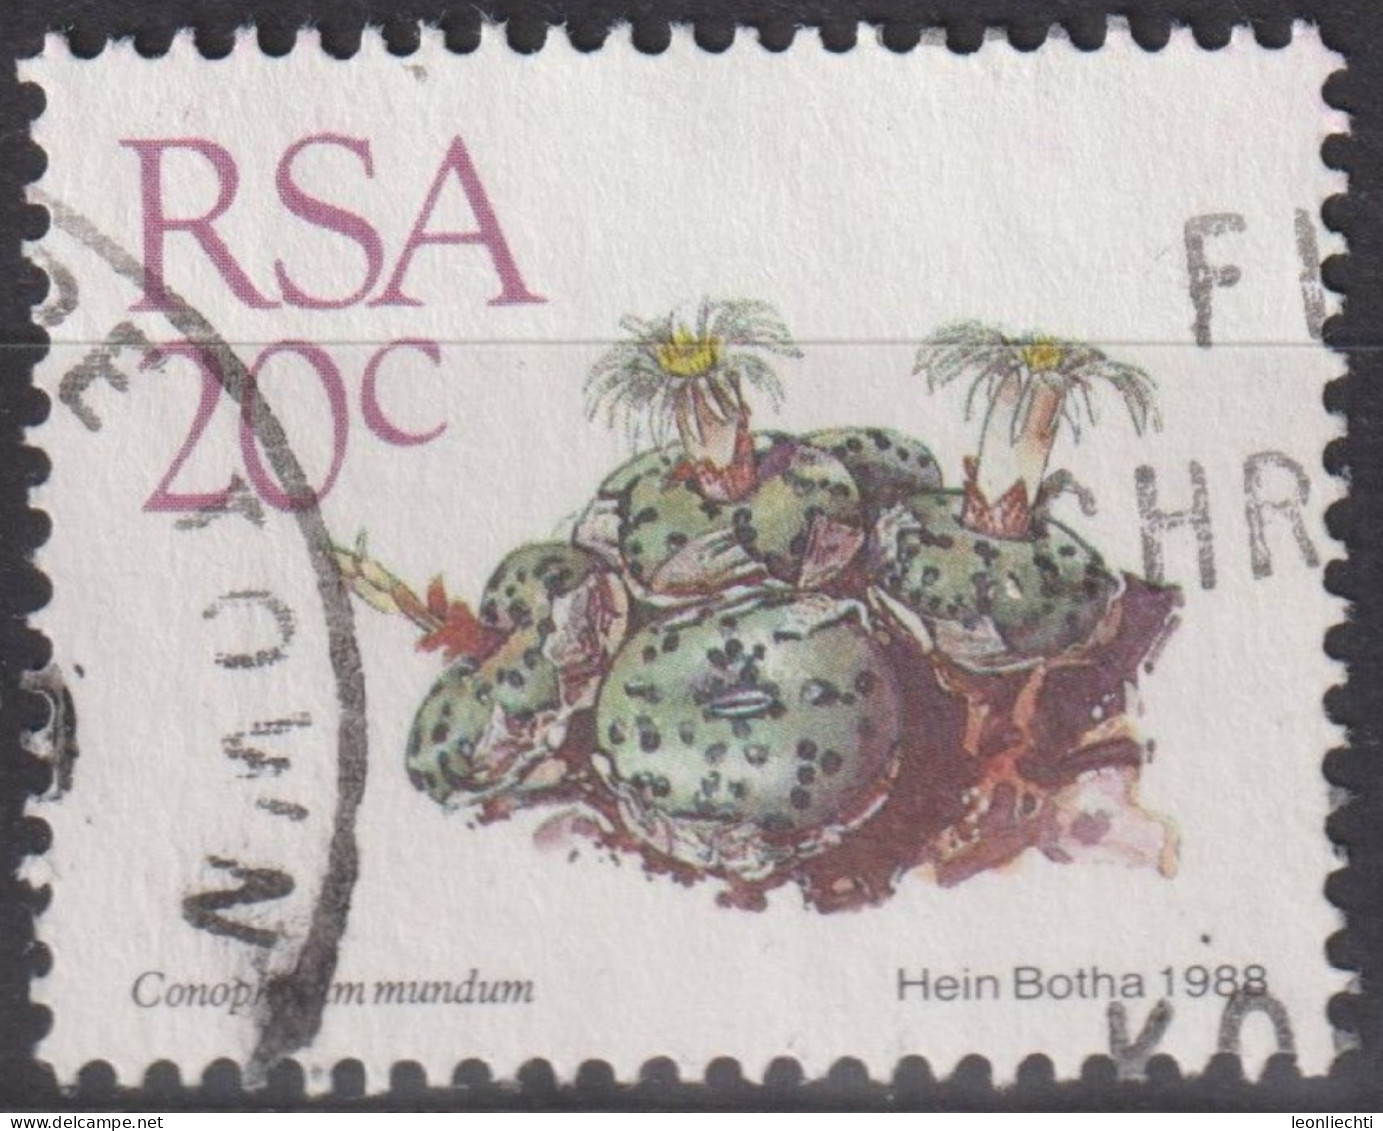 1988 RSA Südafrika ° Mi:ZA 749, Sn:ZA 742, Yt:ZA 666, Conophytum Mundum, Freimarken - Sukkulenten - Oblitérés